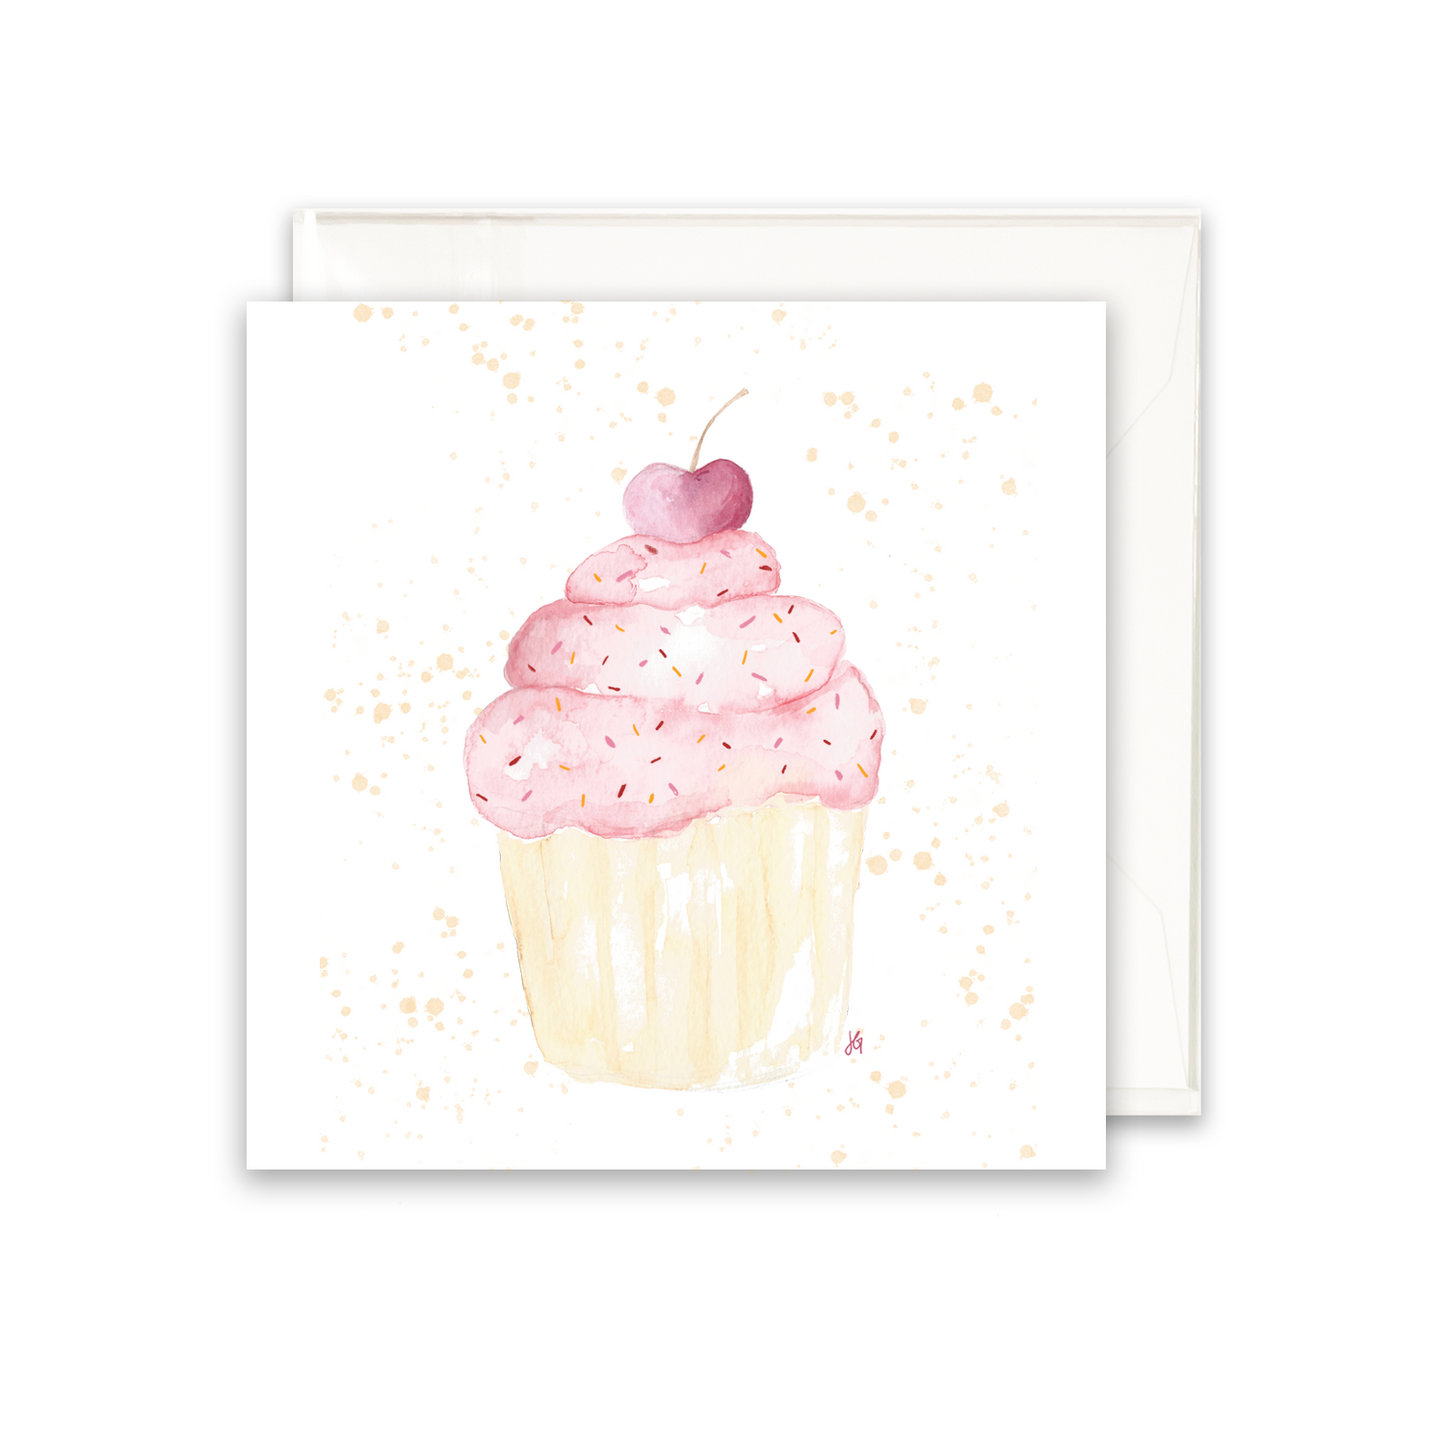 Cupcake Sprinkles Enclosure Card - 2.75" x 2.75" Card